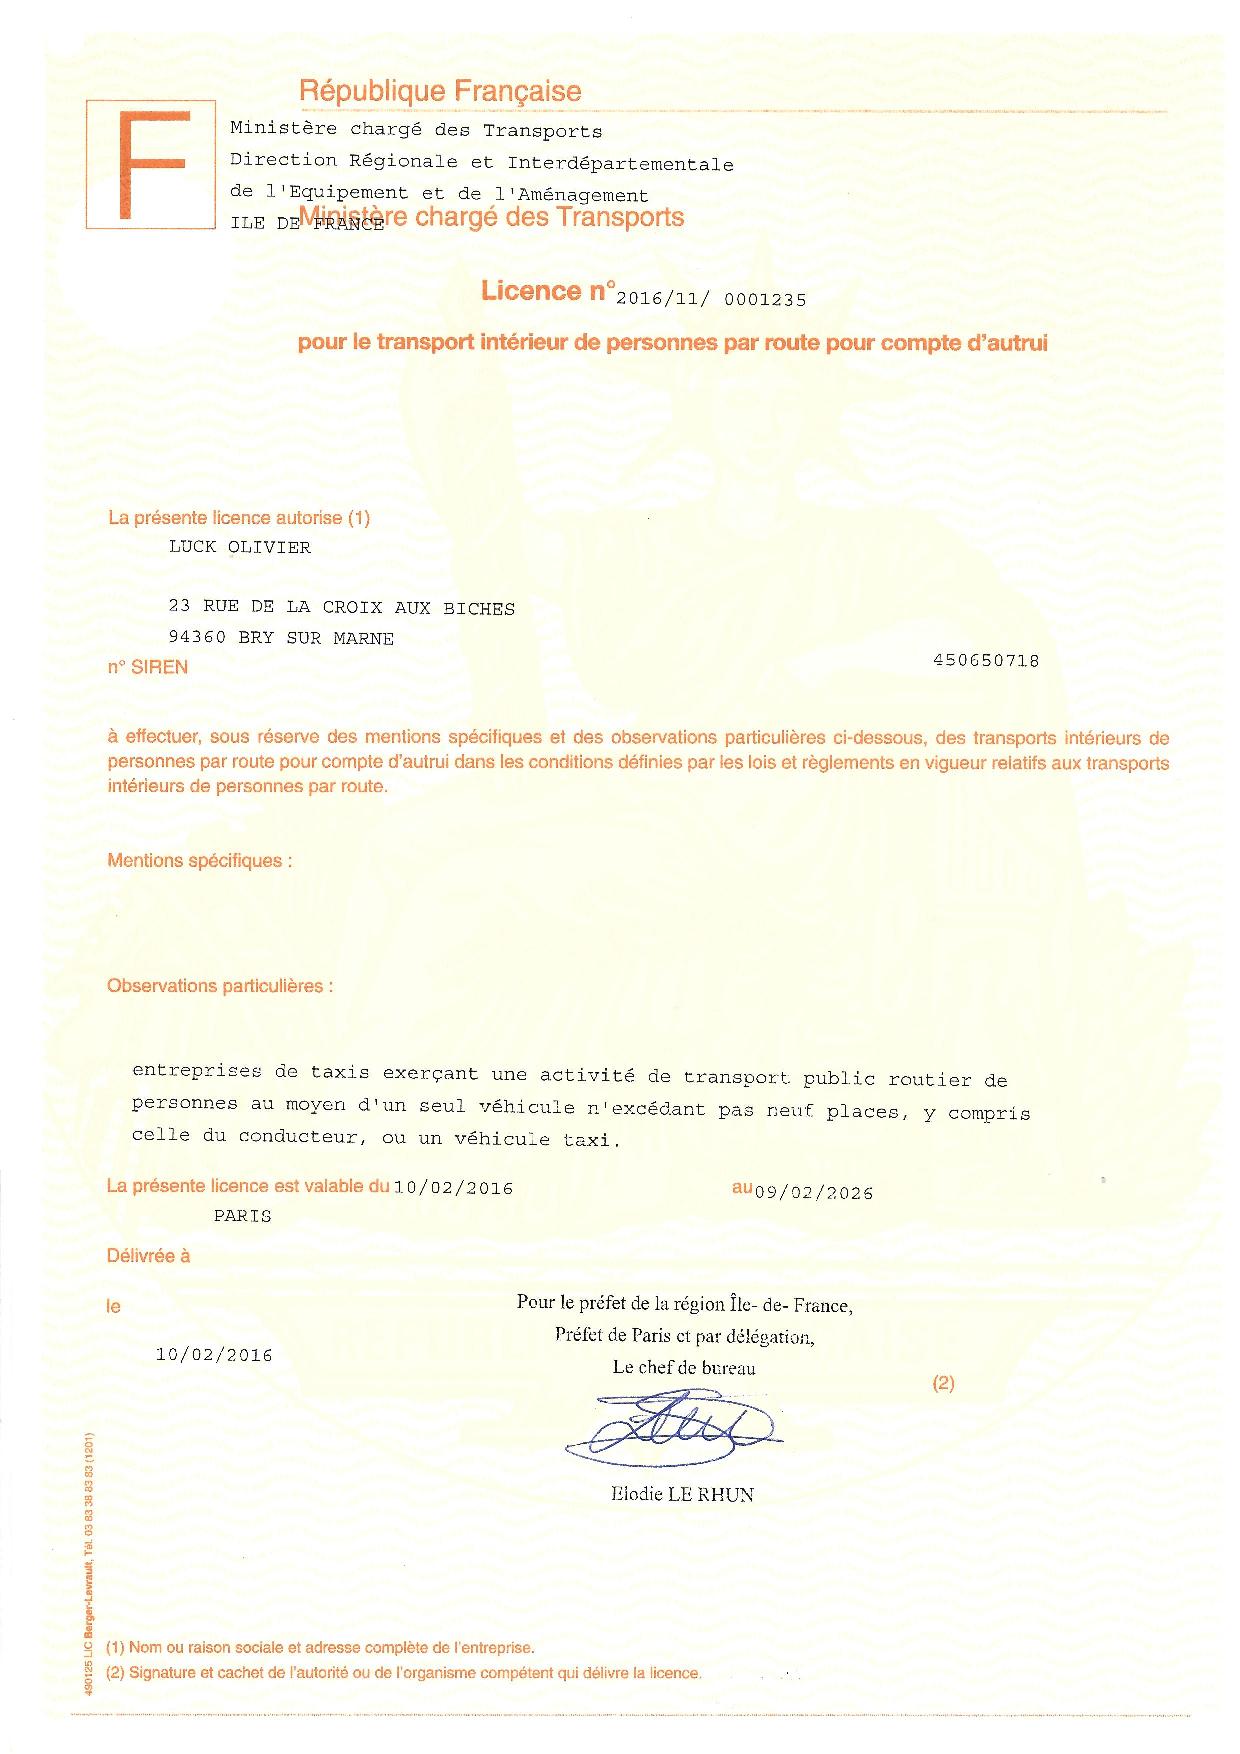 Лицензия на перевозку пассажиров во Франции